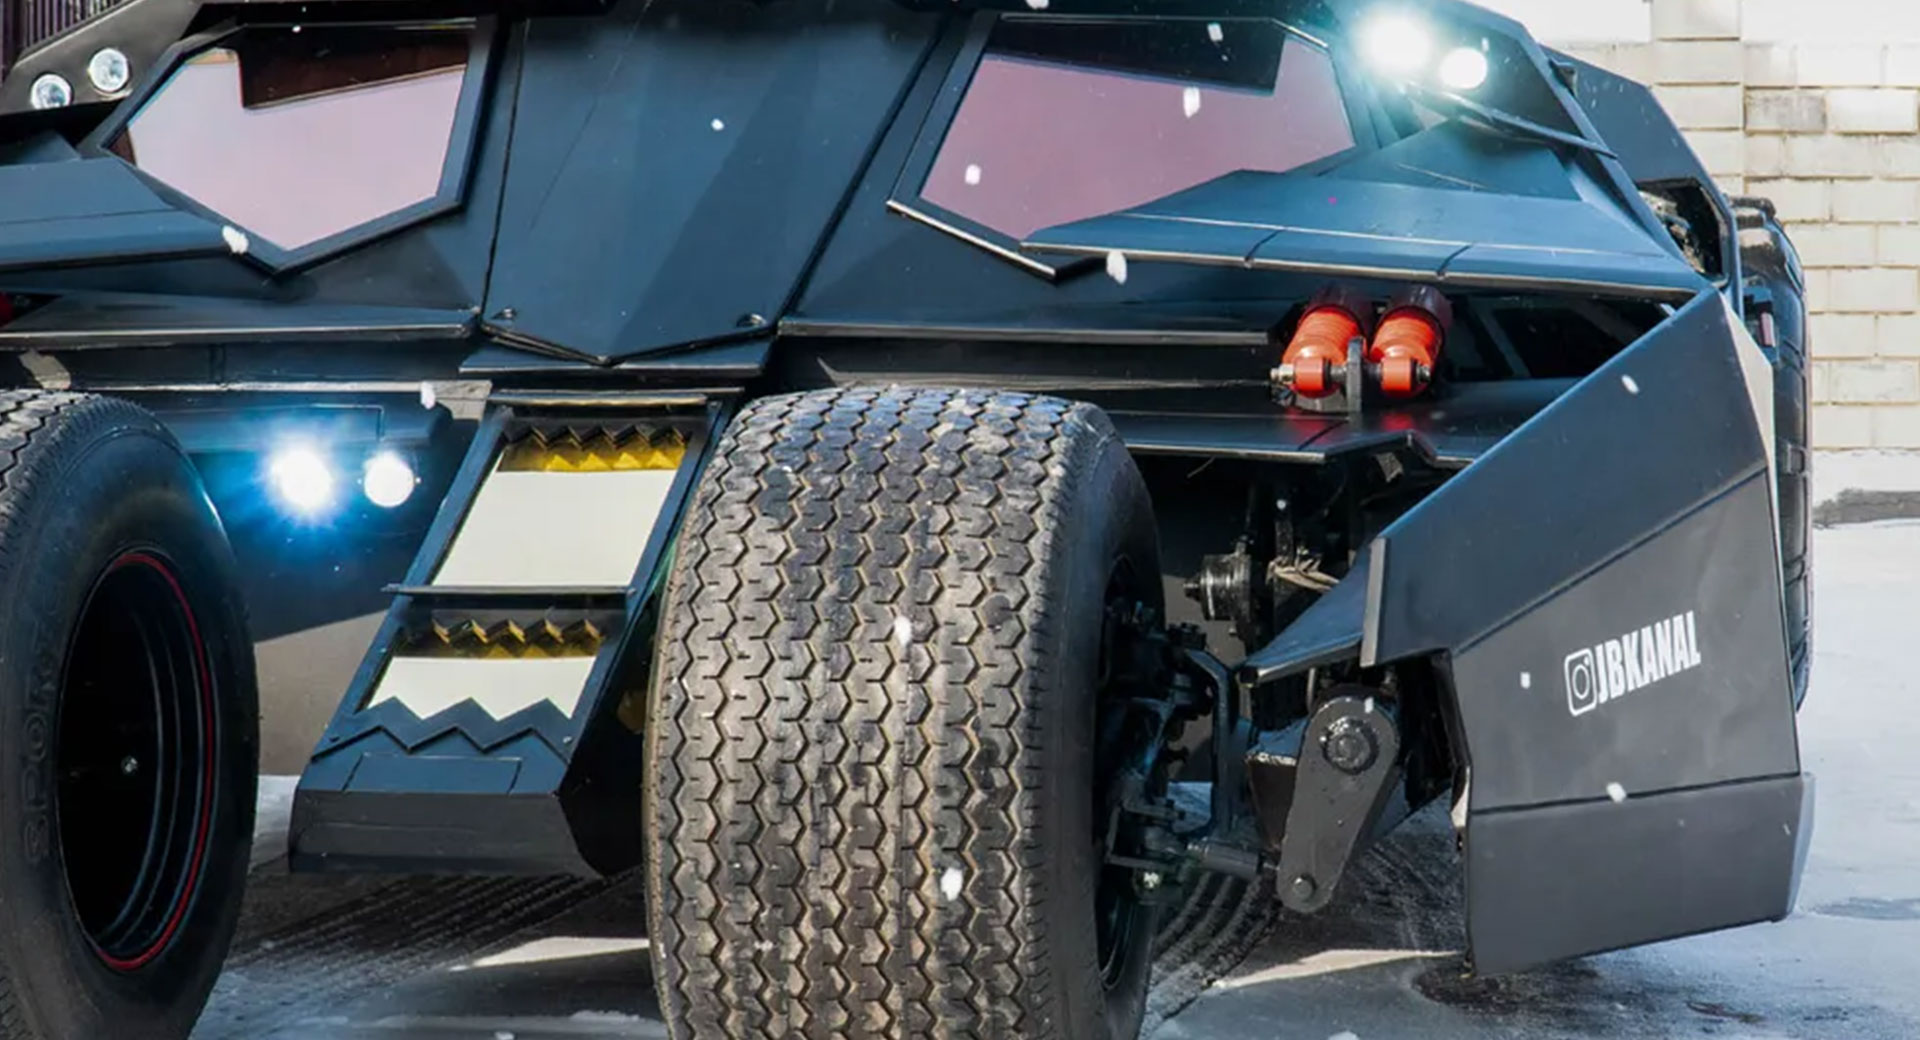 شاهد.. نسخة من سيارة باتمان الخارقة مع محرِّك "تويوتا V8" وهيكل مصنوع يدوياً بالكامل للبيع مقابل 400 ألف دولار 4 12/5/2022 - 7:47 ص